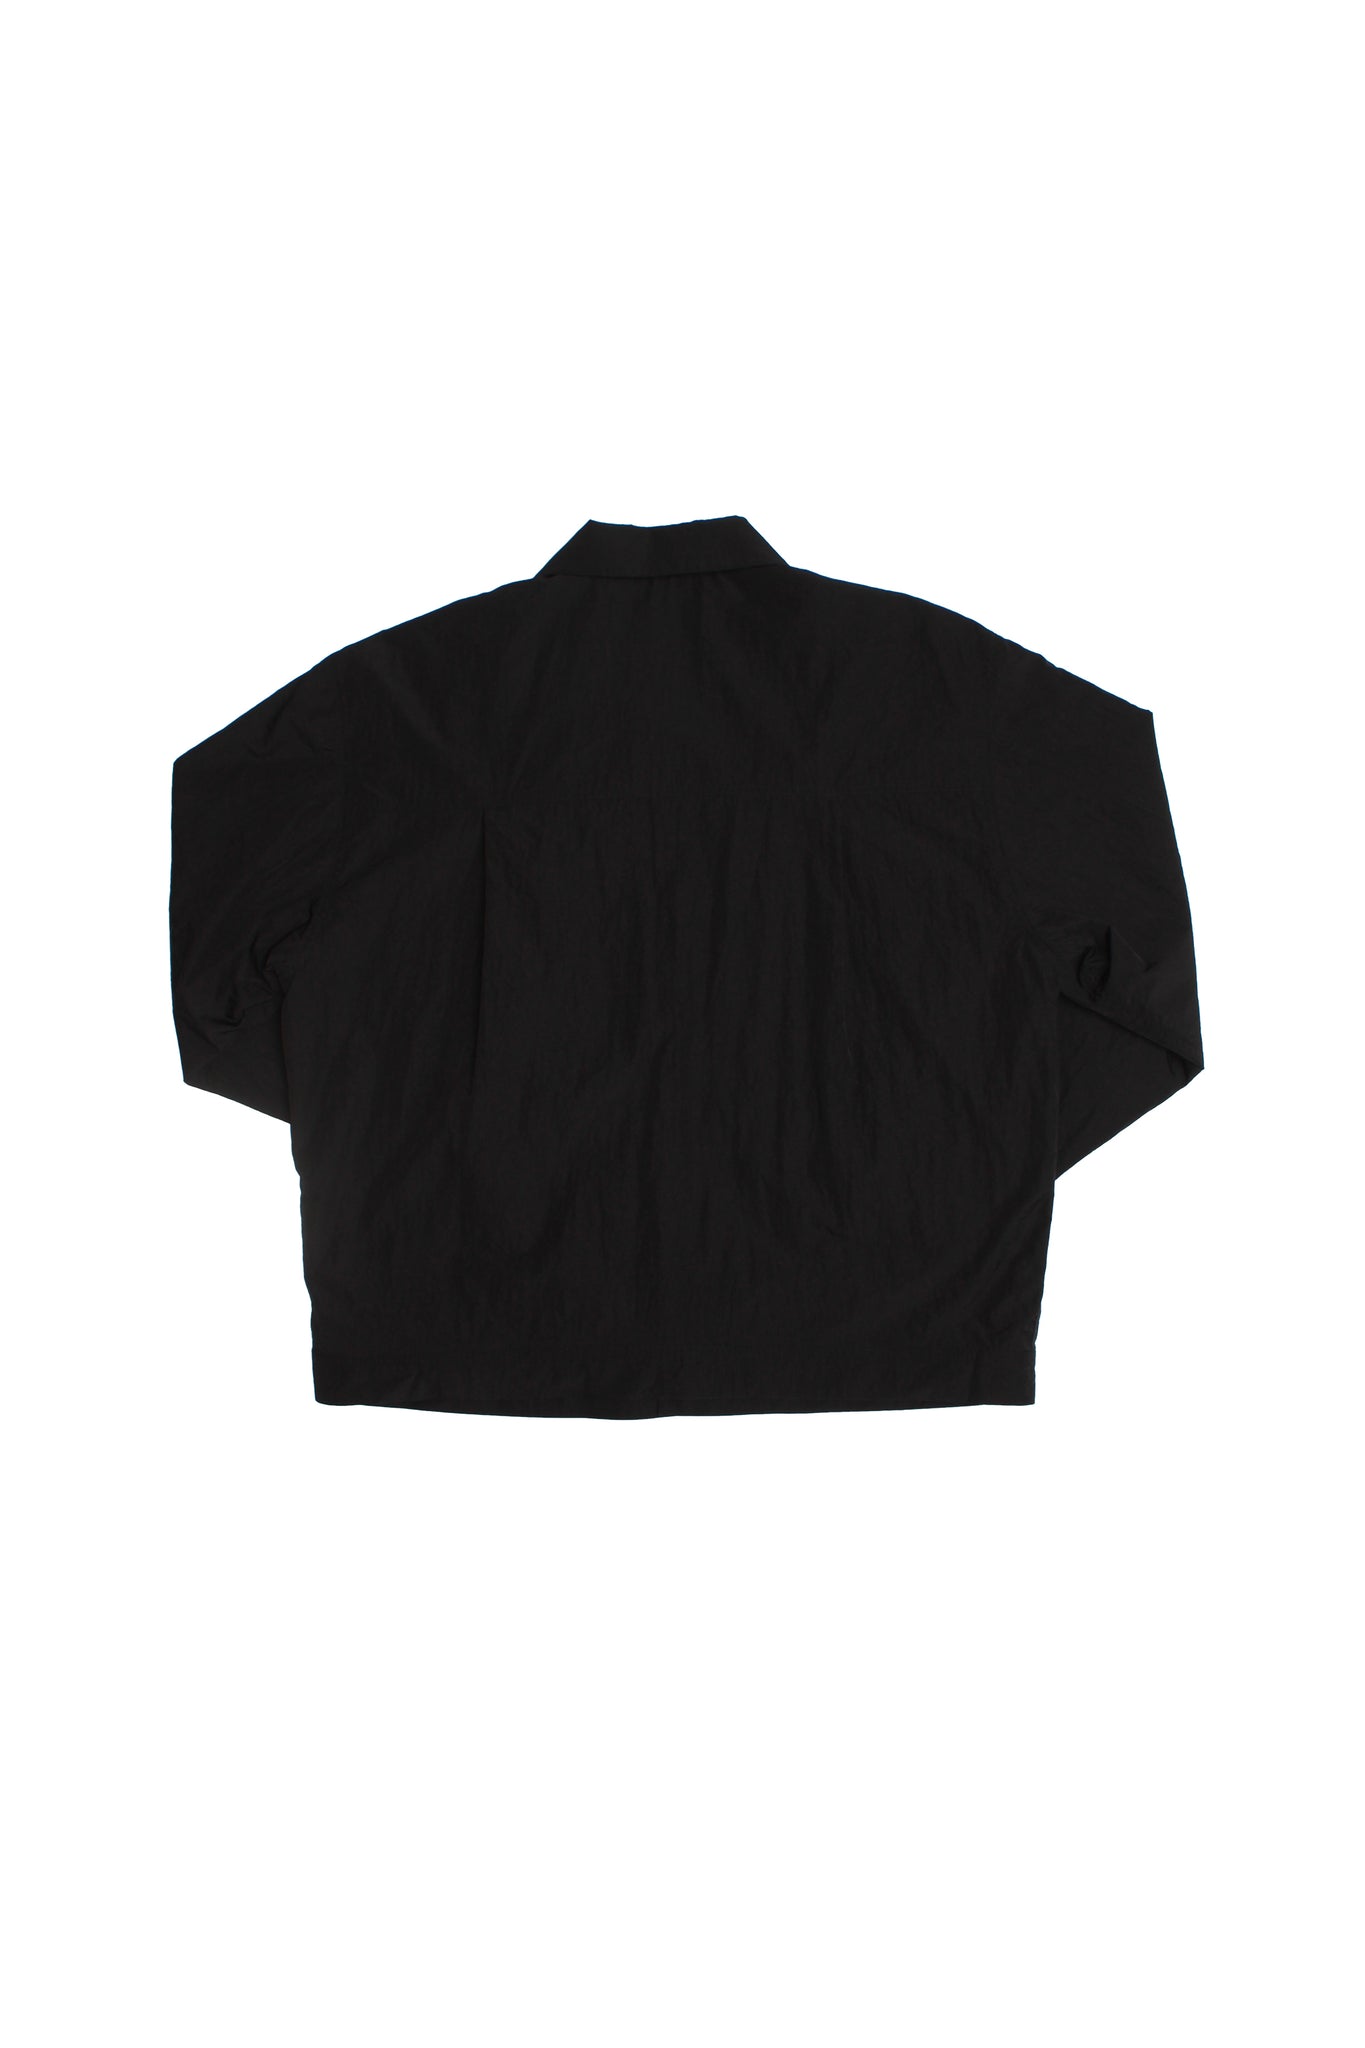 Road Spring Jacket in Black